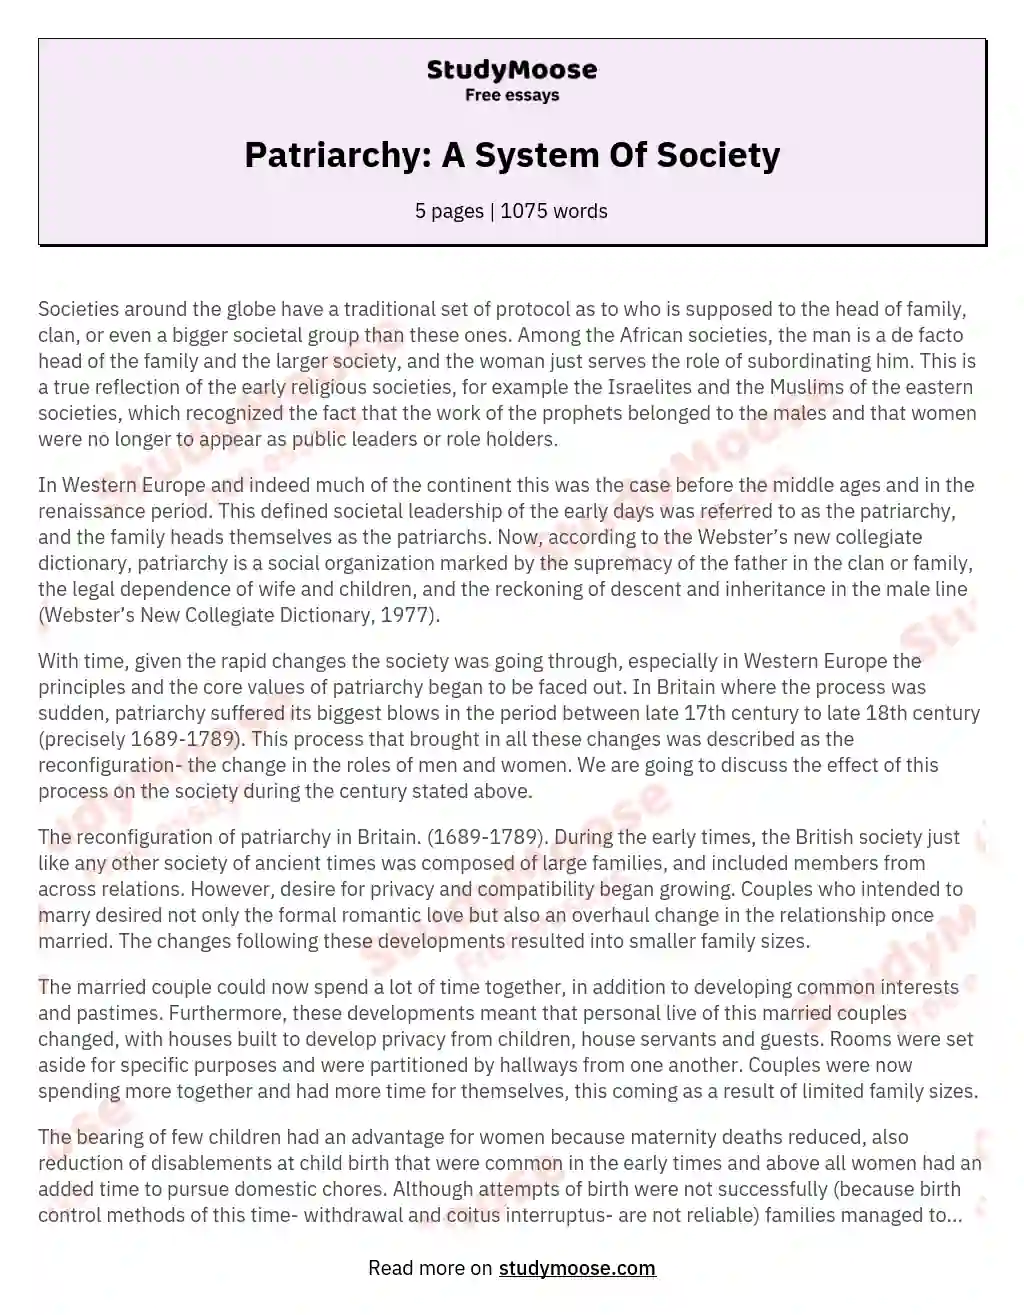 Patriarchy: A System Of Society essay